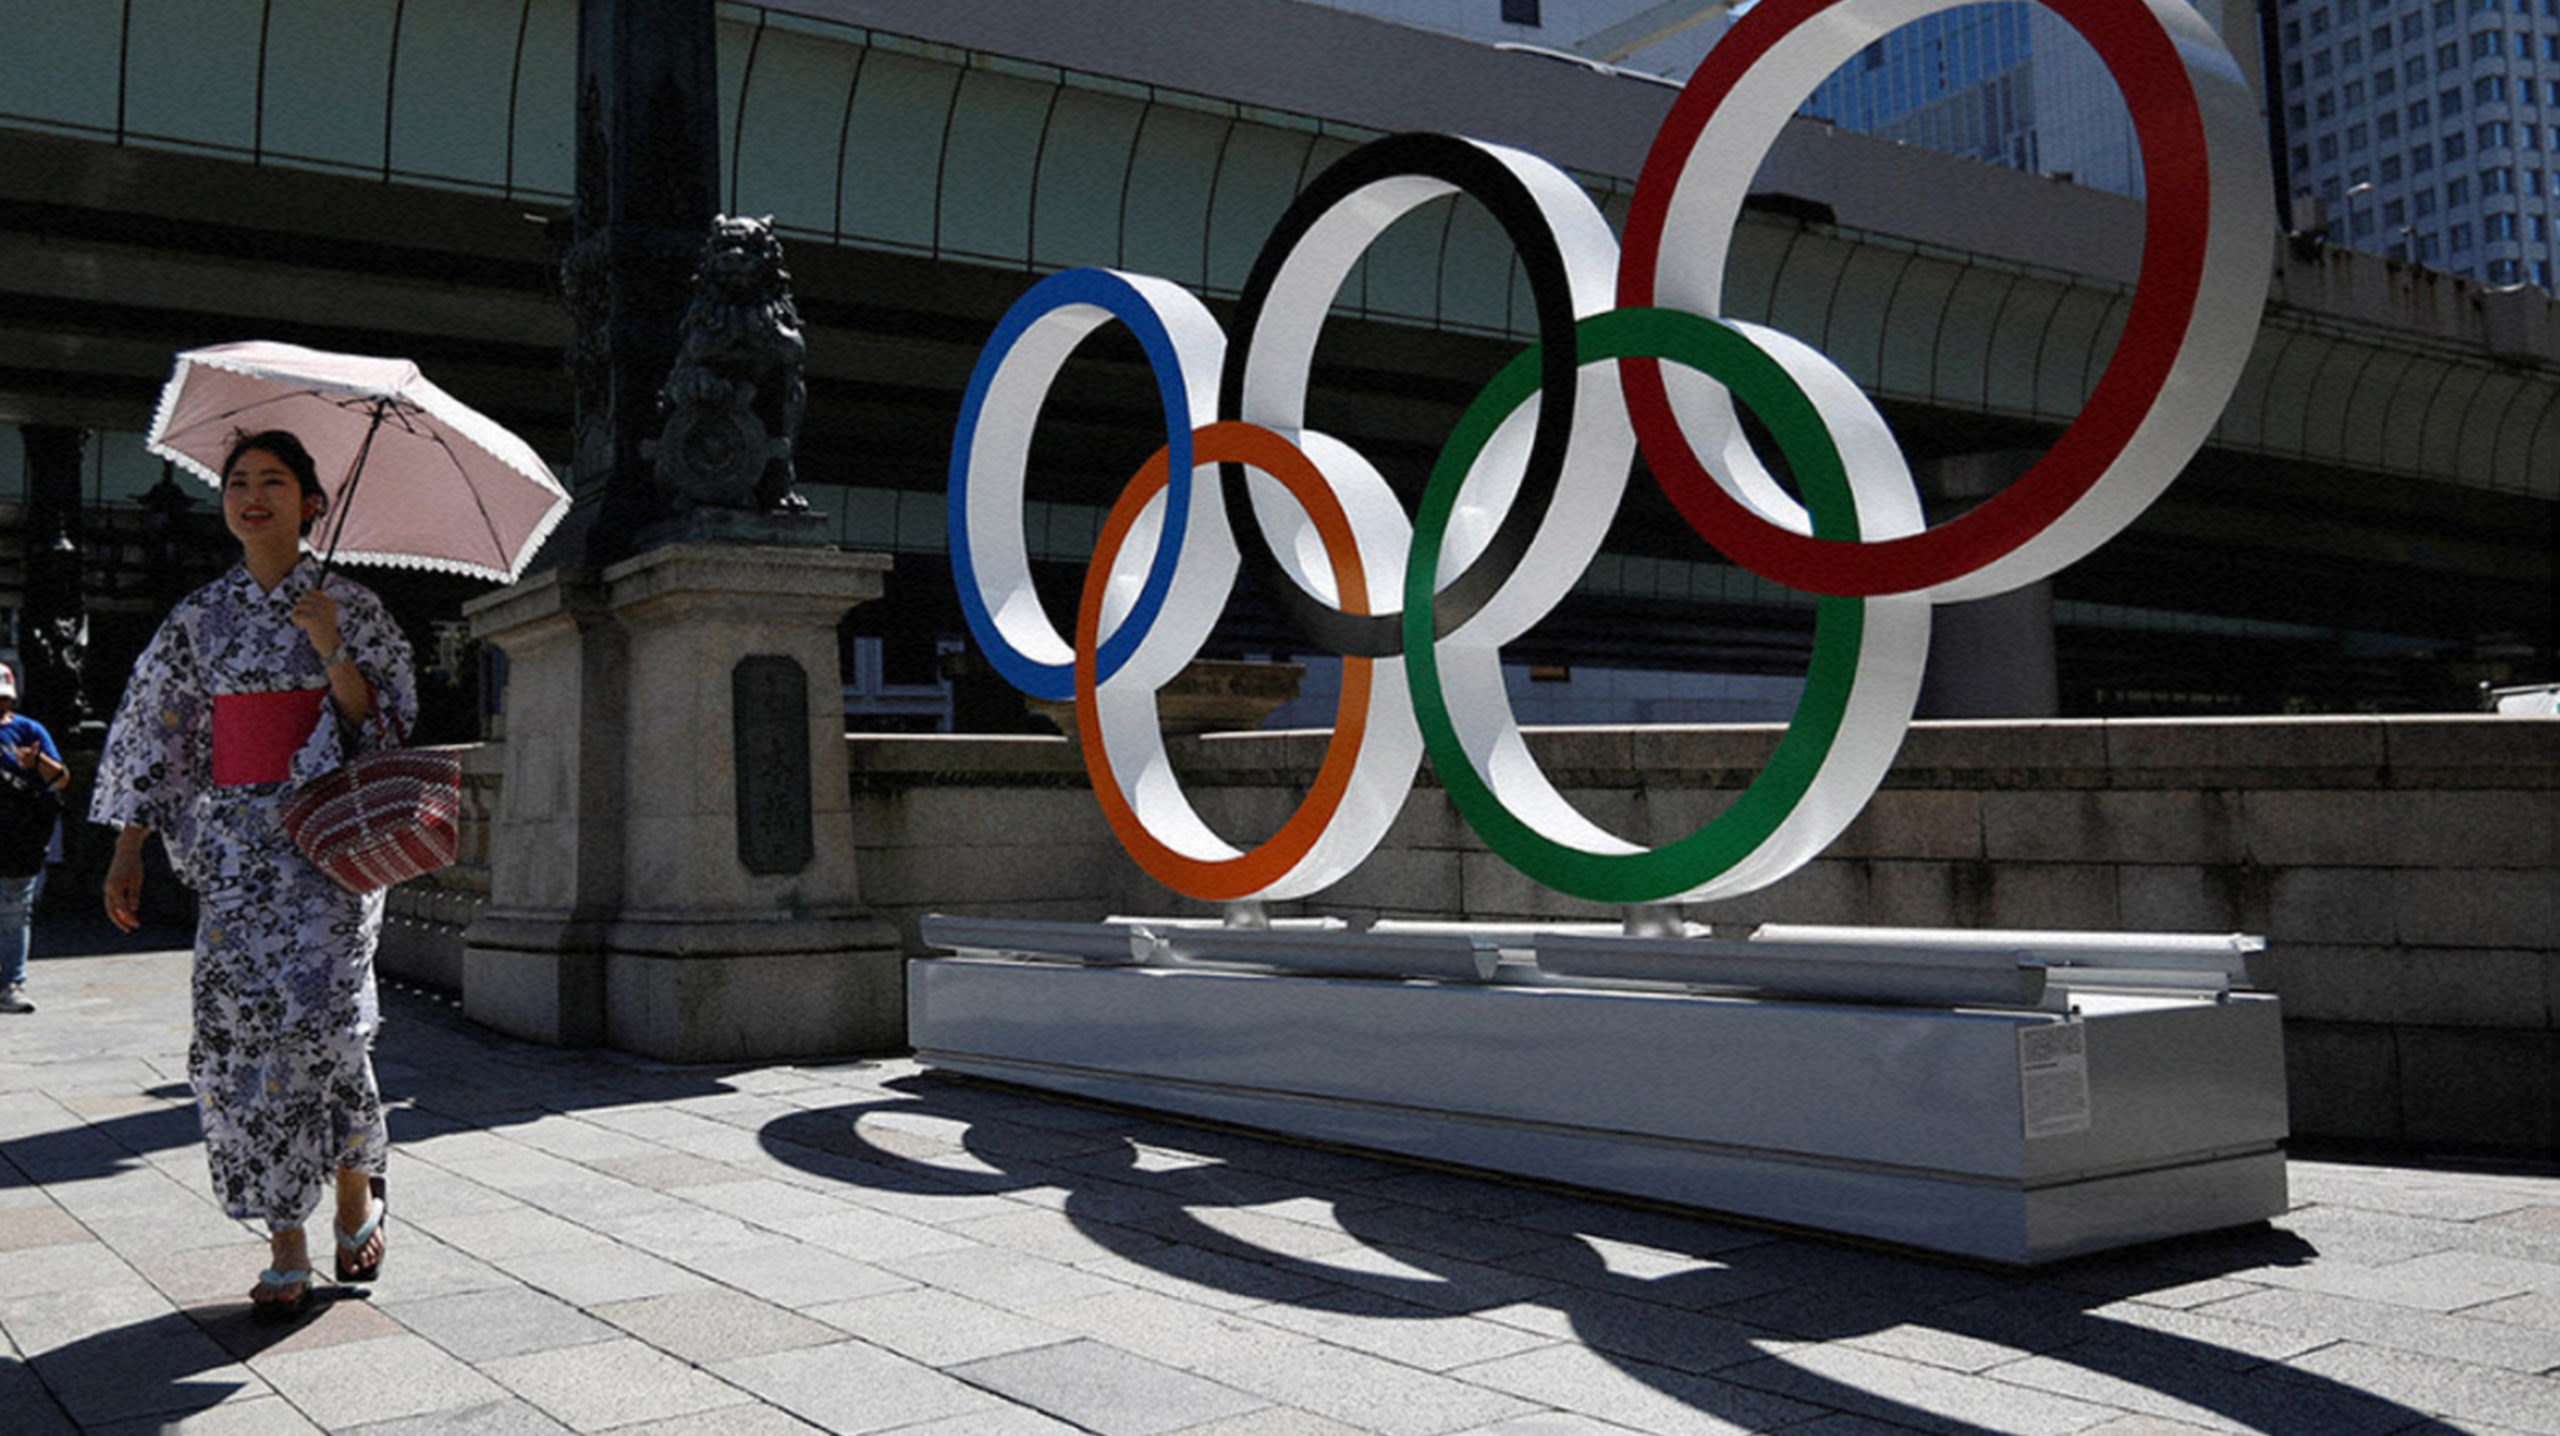 25 июля на Олимпиаде в Токио разыграют 18 комплектов медалей